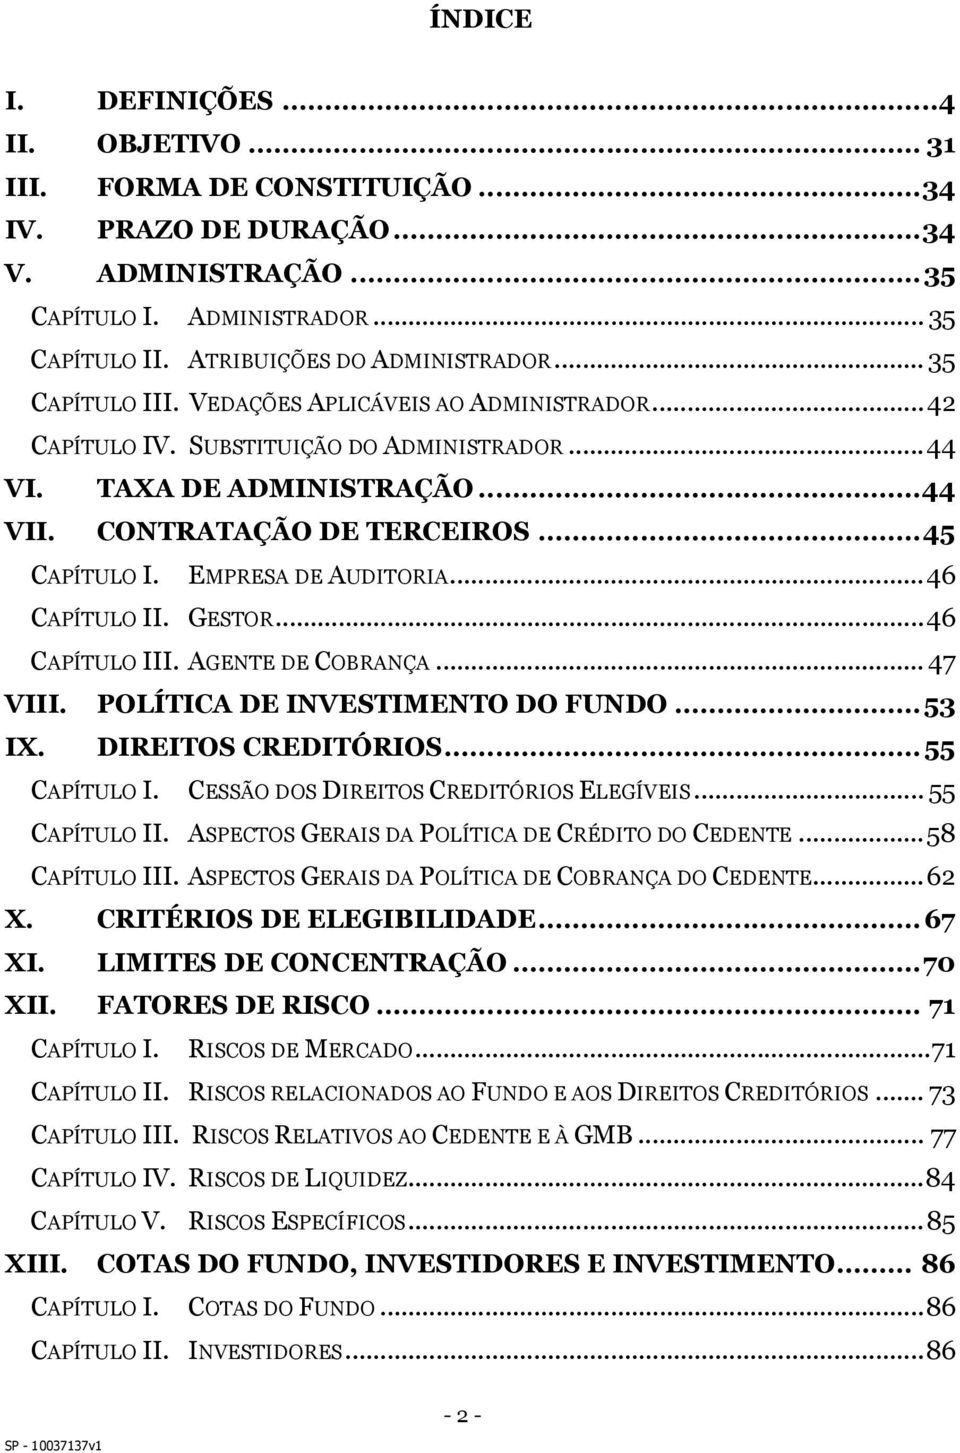 CONTRATAÇÃO DE TERCEIROS... 45 CAPÍTULO I. EMPRESA DE AUDITORIA... 46 CAPÍTULO II. GESTOR... 46 CAPÍTULO III. AGENTE DE COBRANÇA... 47 VIII. POLÍTICA DE INVESTIMENTO DO FUNDO... 53 IX.